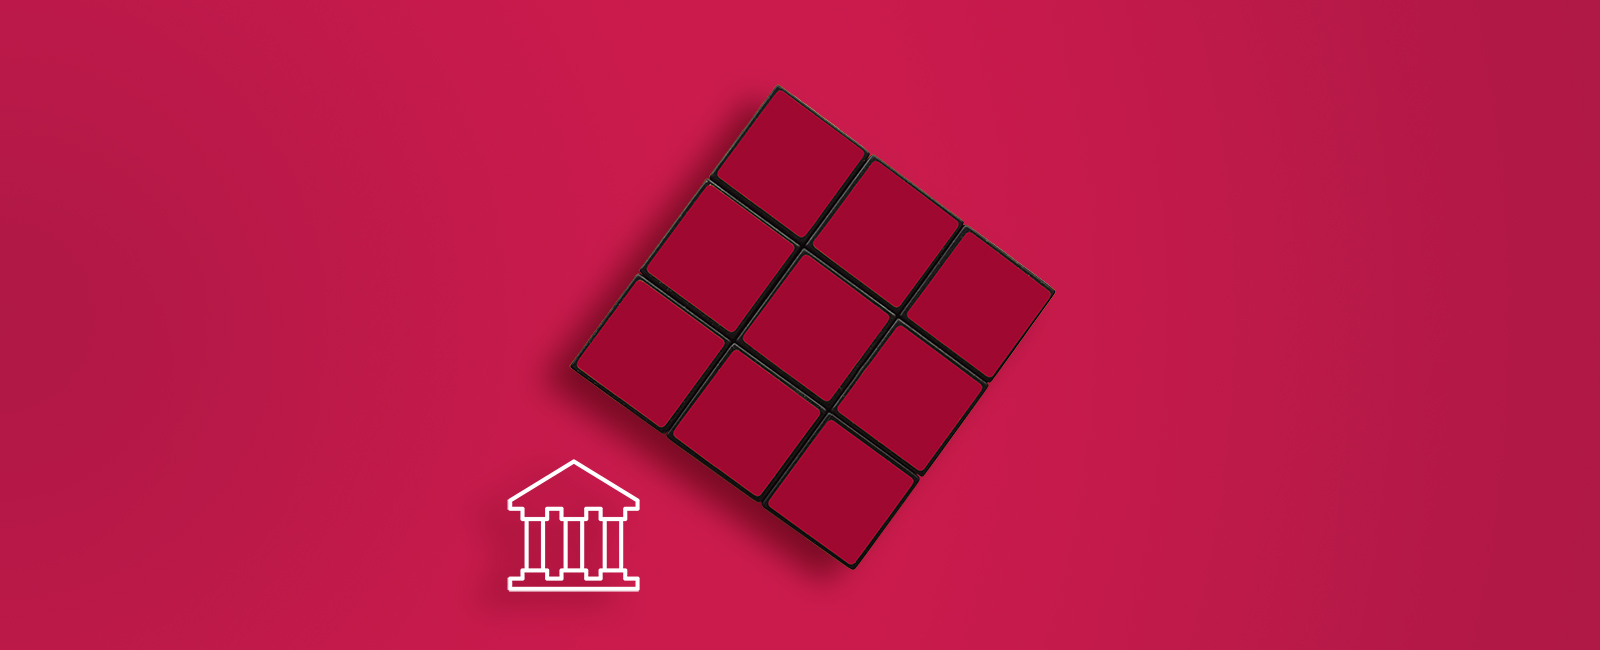 red rubics cube